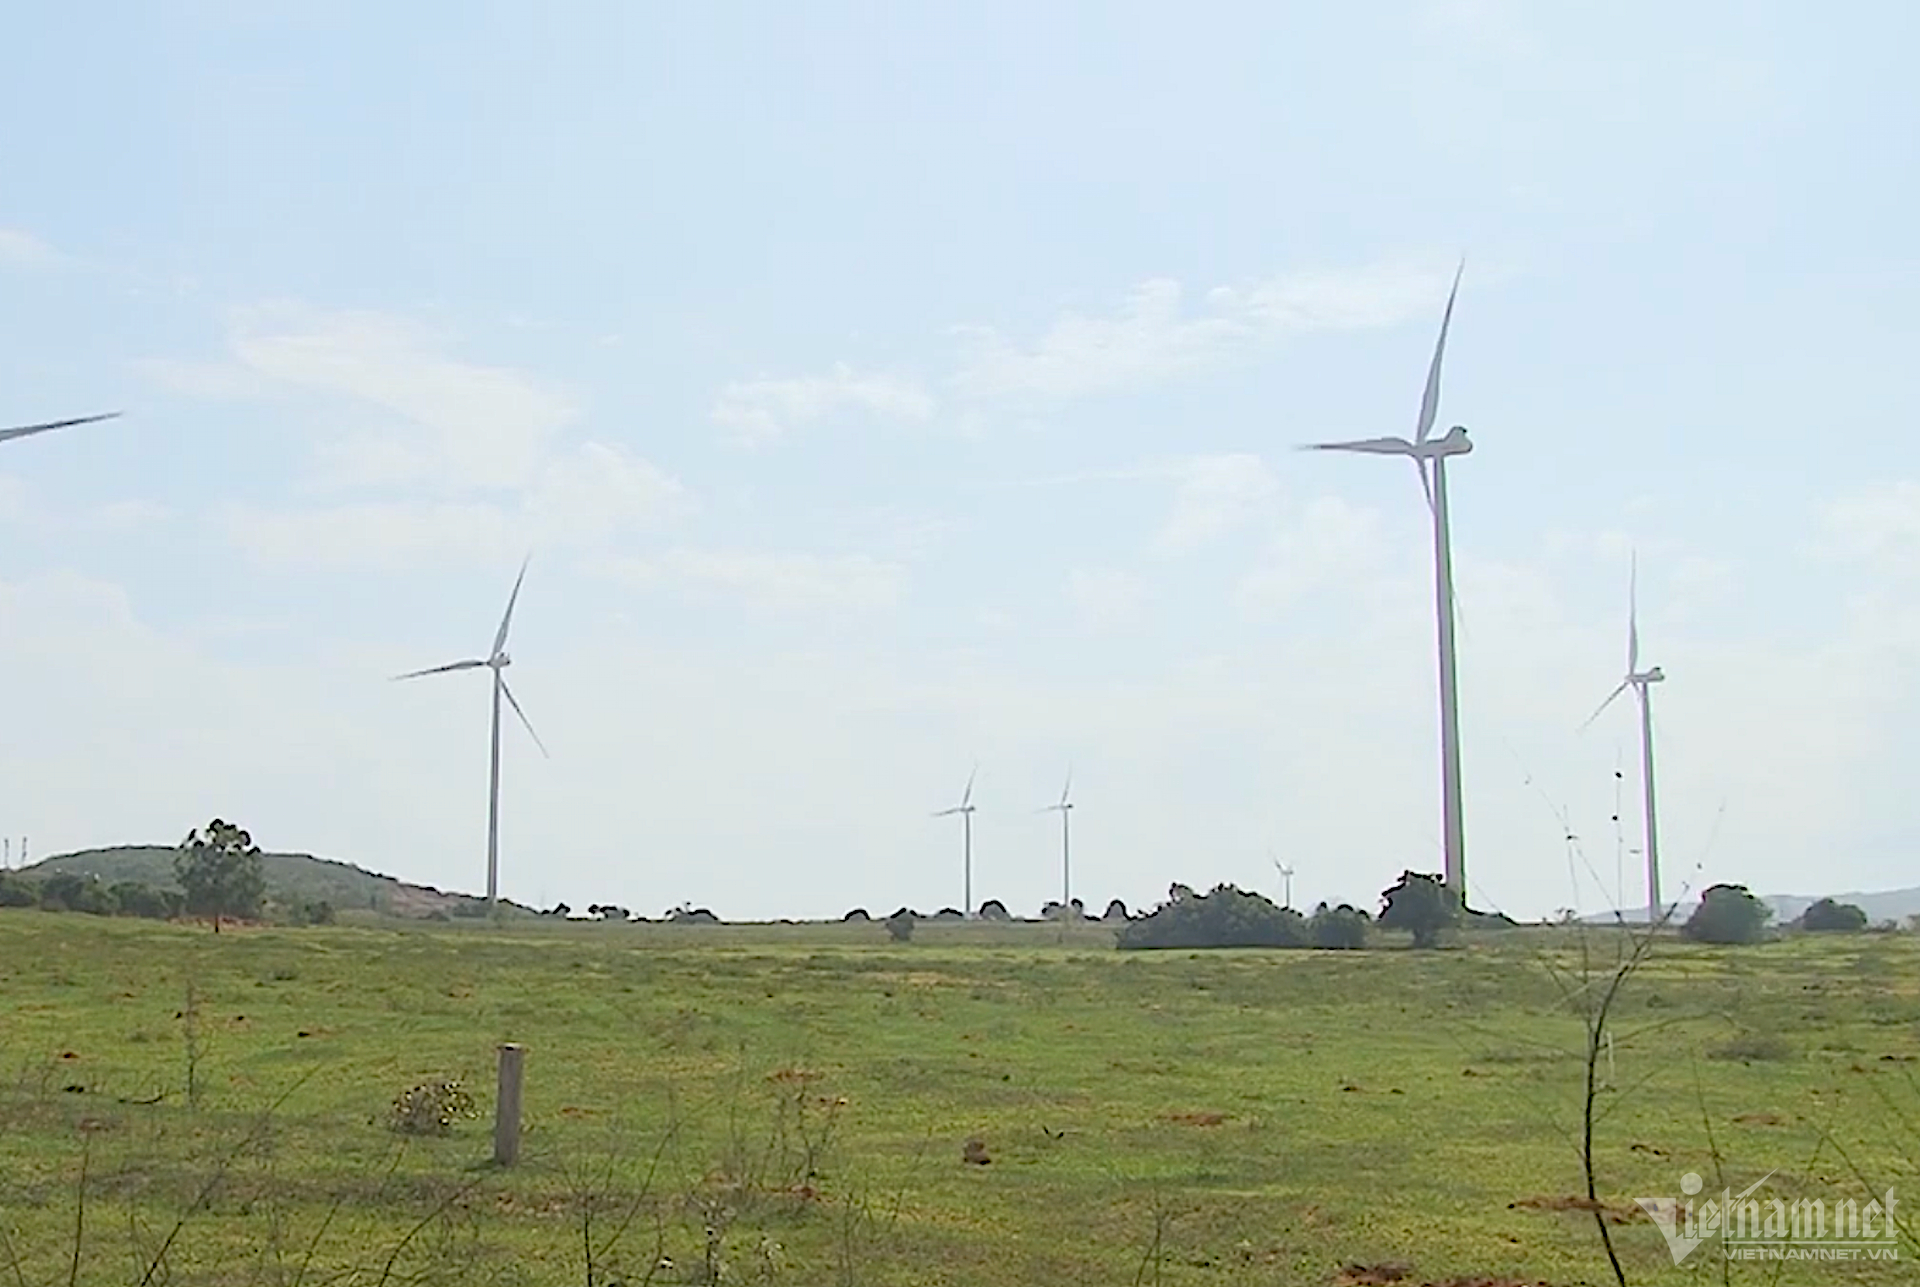 Trong những năm gần đây, điện gió cũng đã trở thành một trong những nguồn năng lượng tái tạo phát triển nhanh nhất tại Việt Nam, với tổng công suất lắp đặt đã vượt mốc 1.000 MW.

